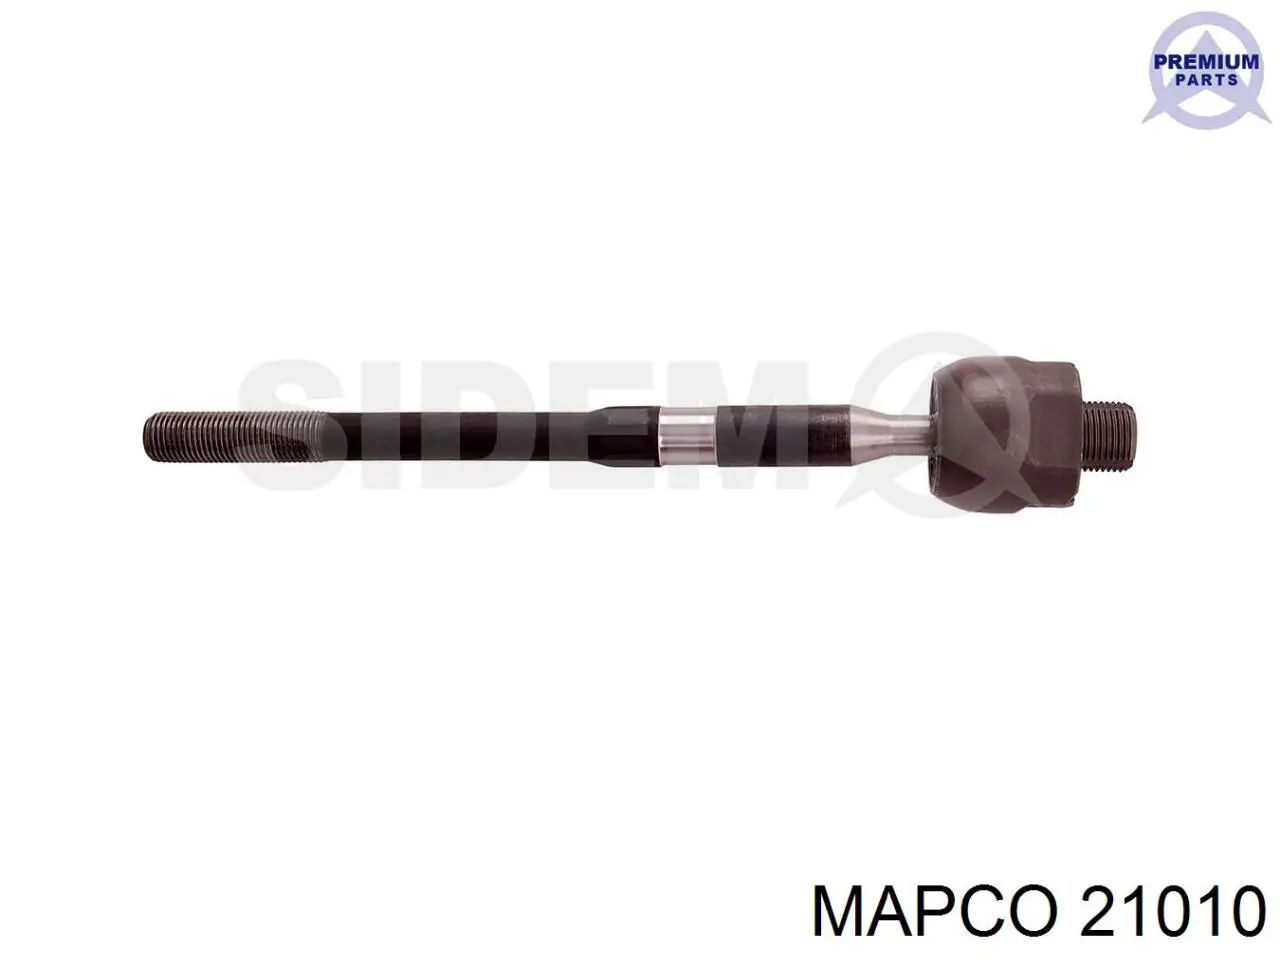 21010 Mapco bomba de agua